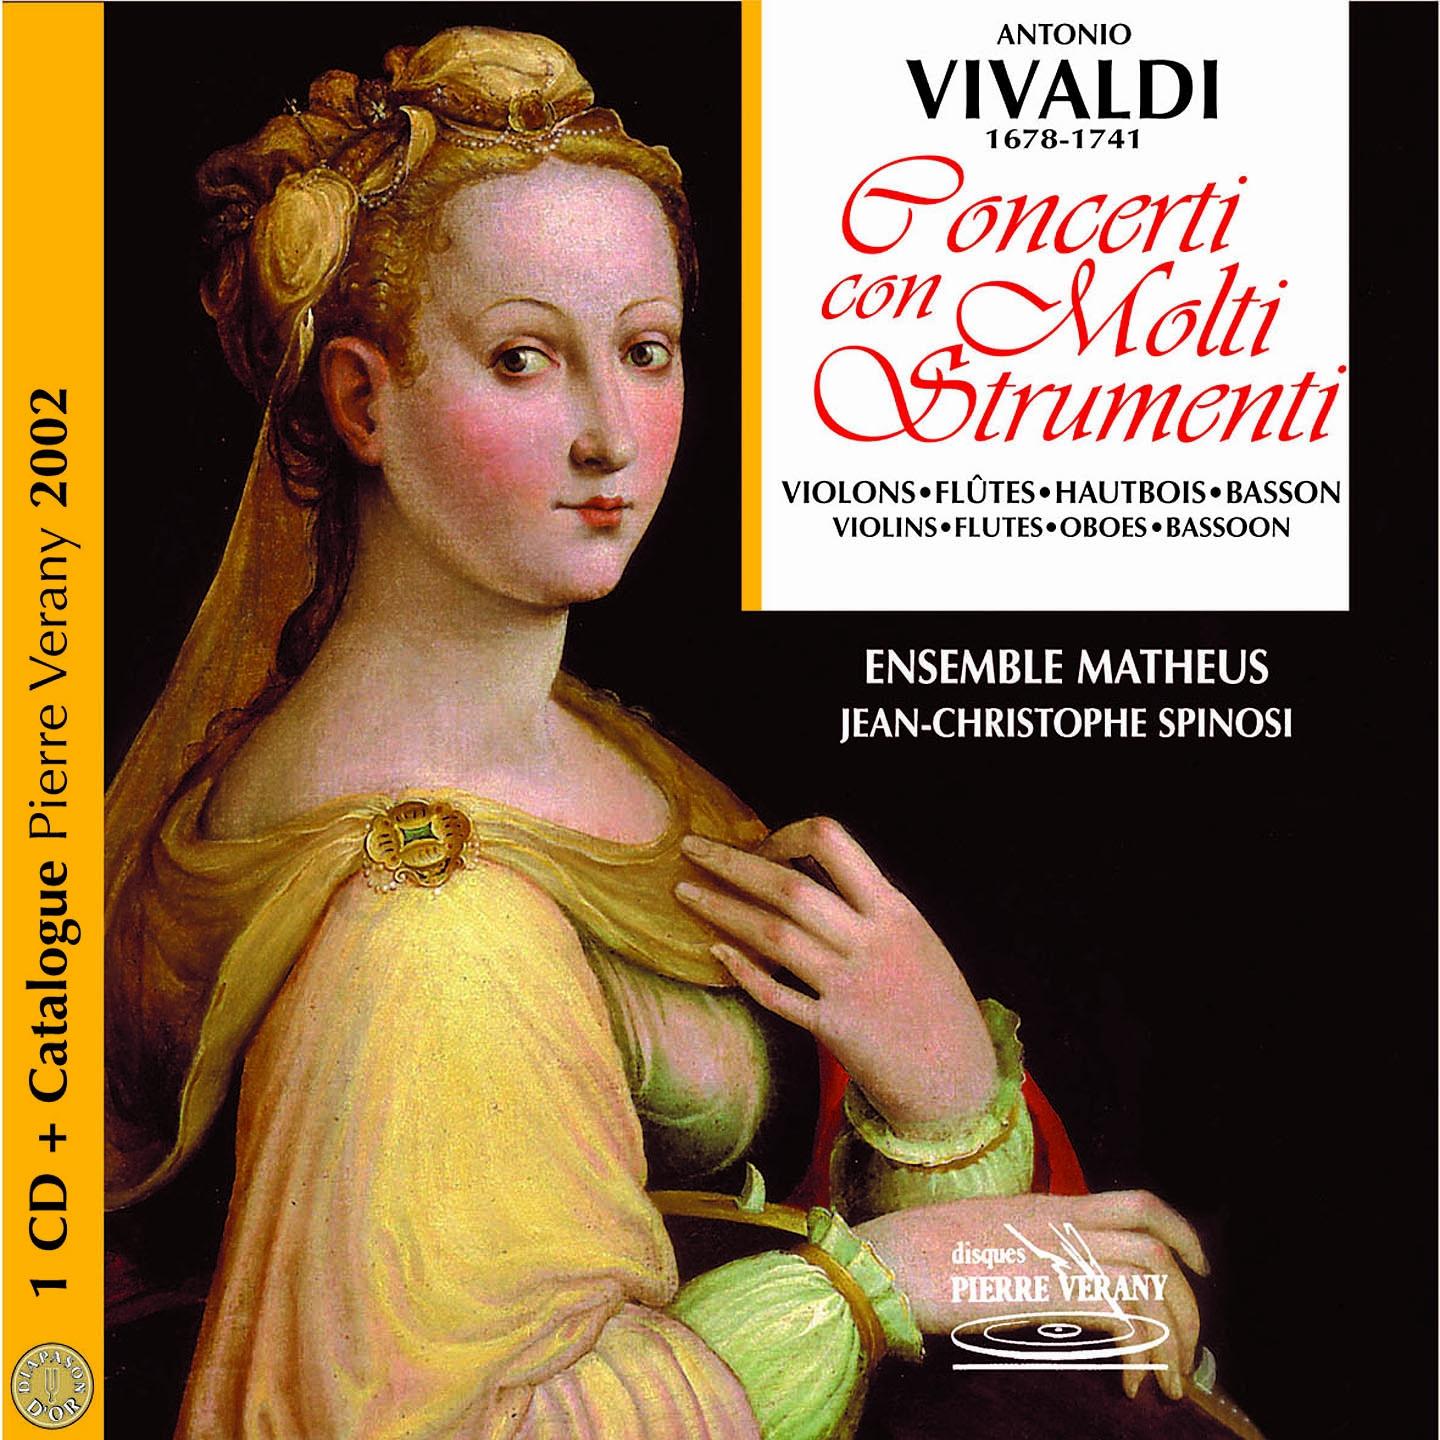 Vivaldi : Catalogue Ve rany classique 2002  Concerti con molti strumenti, vol. 2